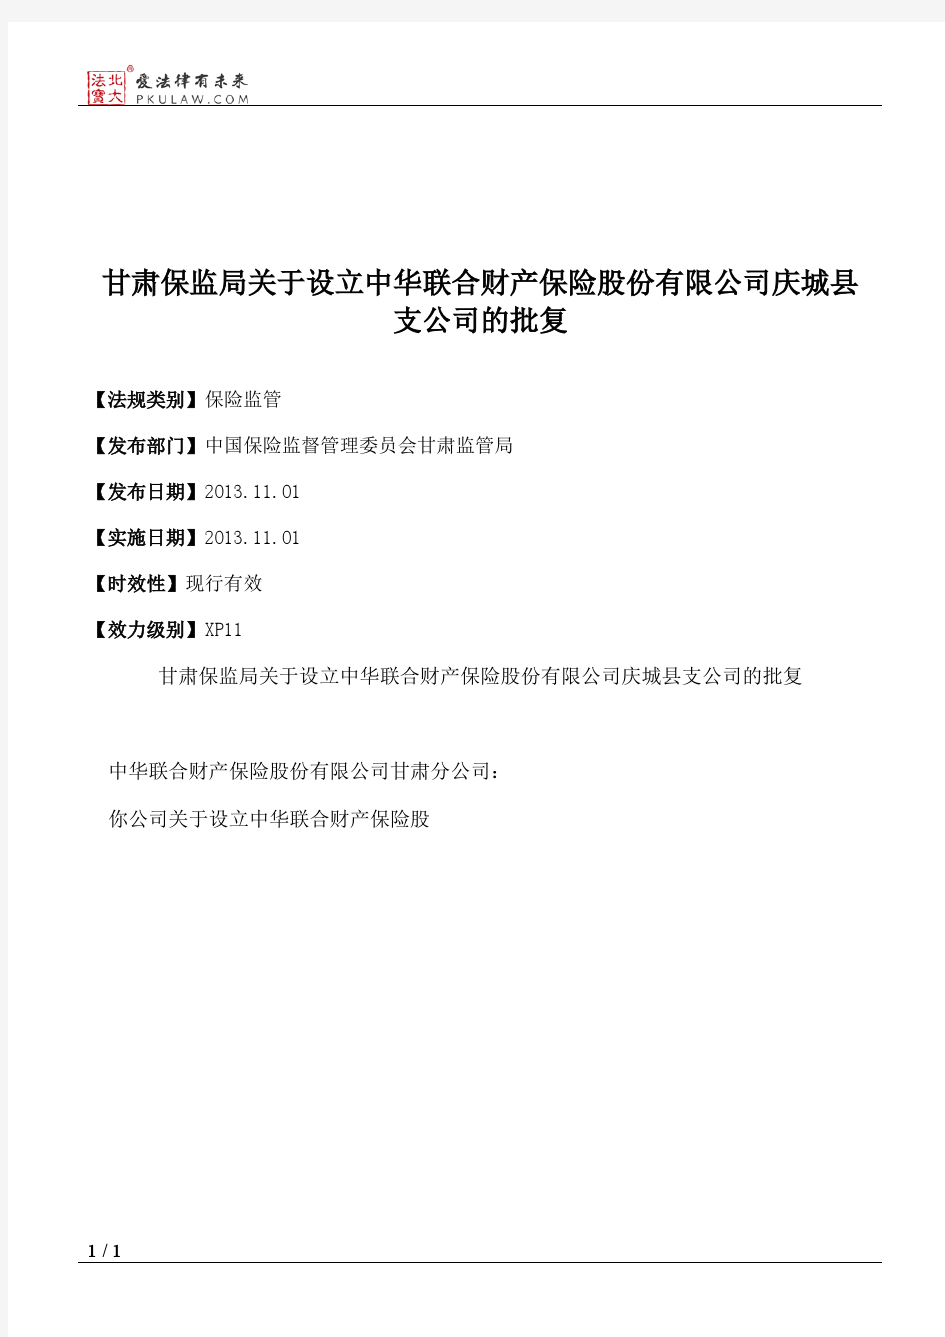 甘肃保监局关于设立中华联合财产保险股份有限公司庆城县支公司的批复